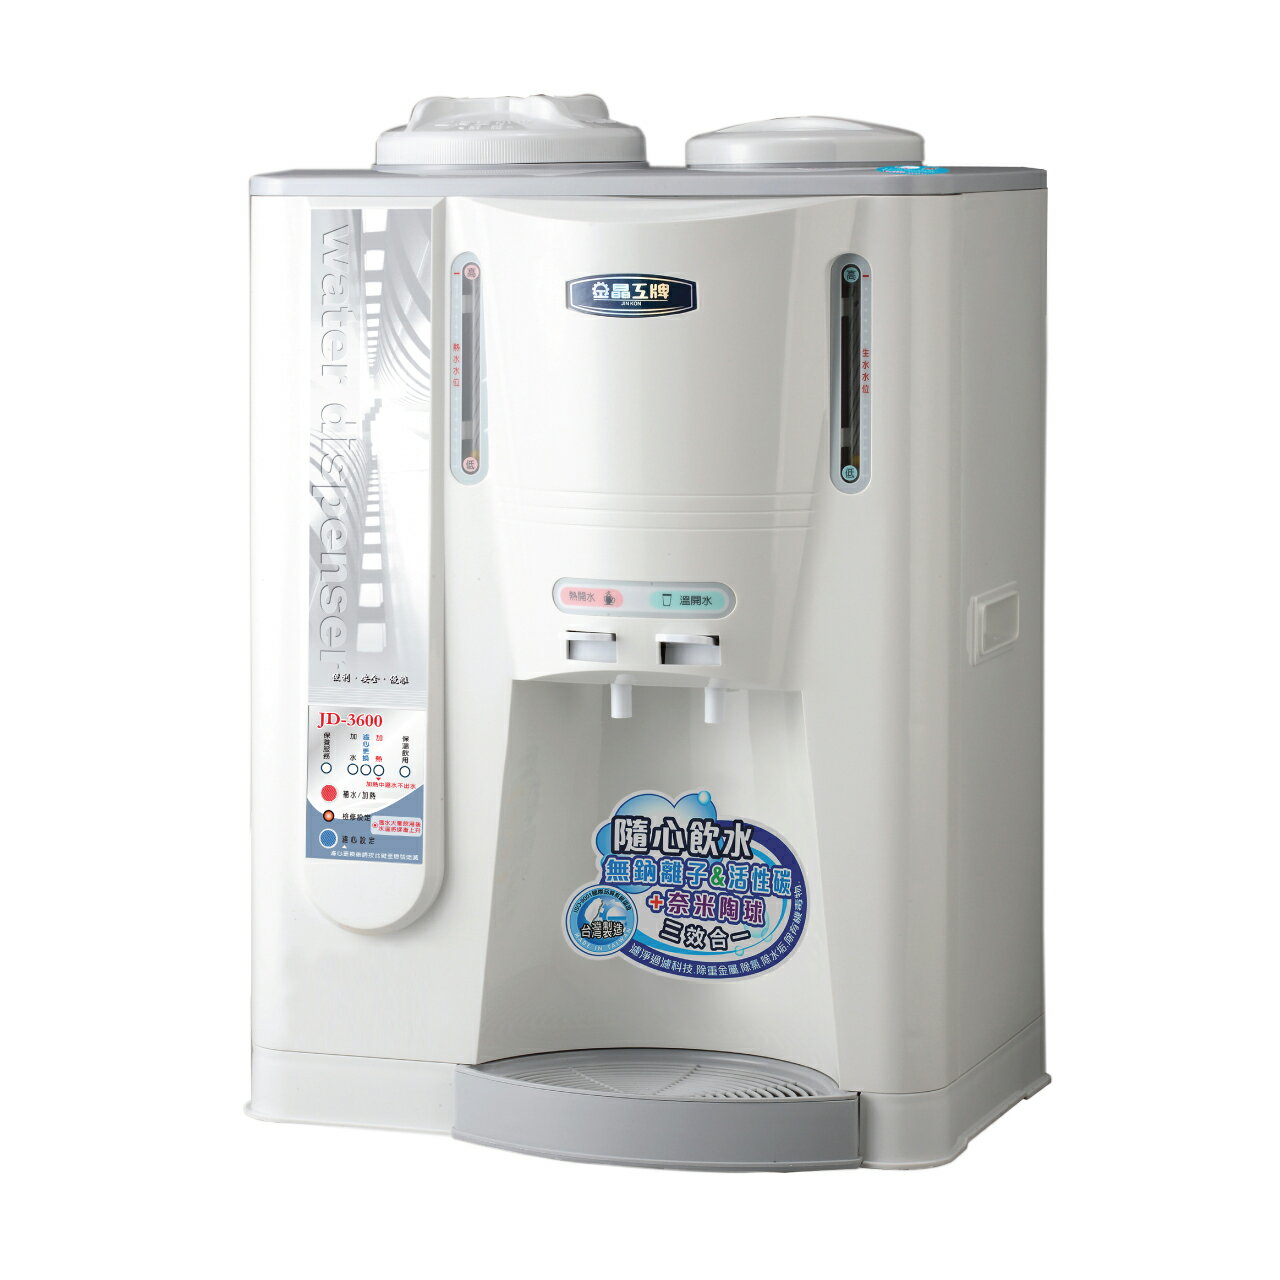 【晶工牌】JD-3600溫熱全自動開飲機(飲水機)10.5公升